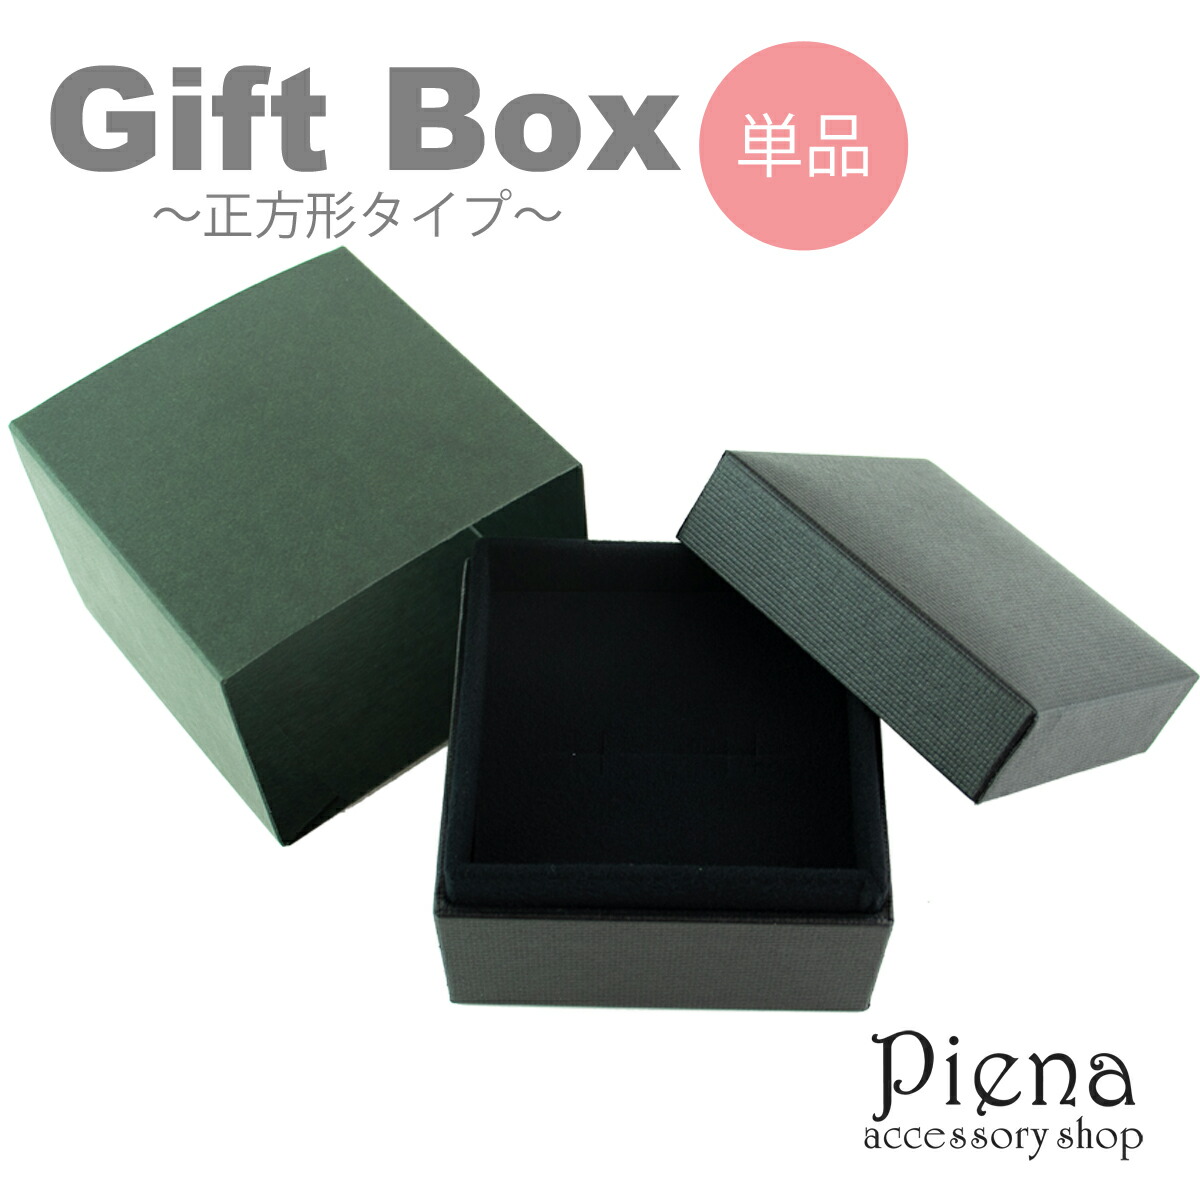 ギフトボックス プレゼント 正方形 フタ付き 無地 化粧箱 